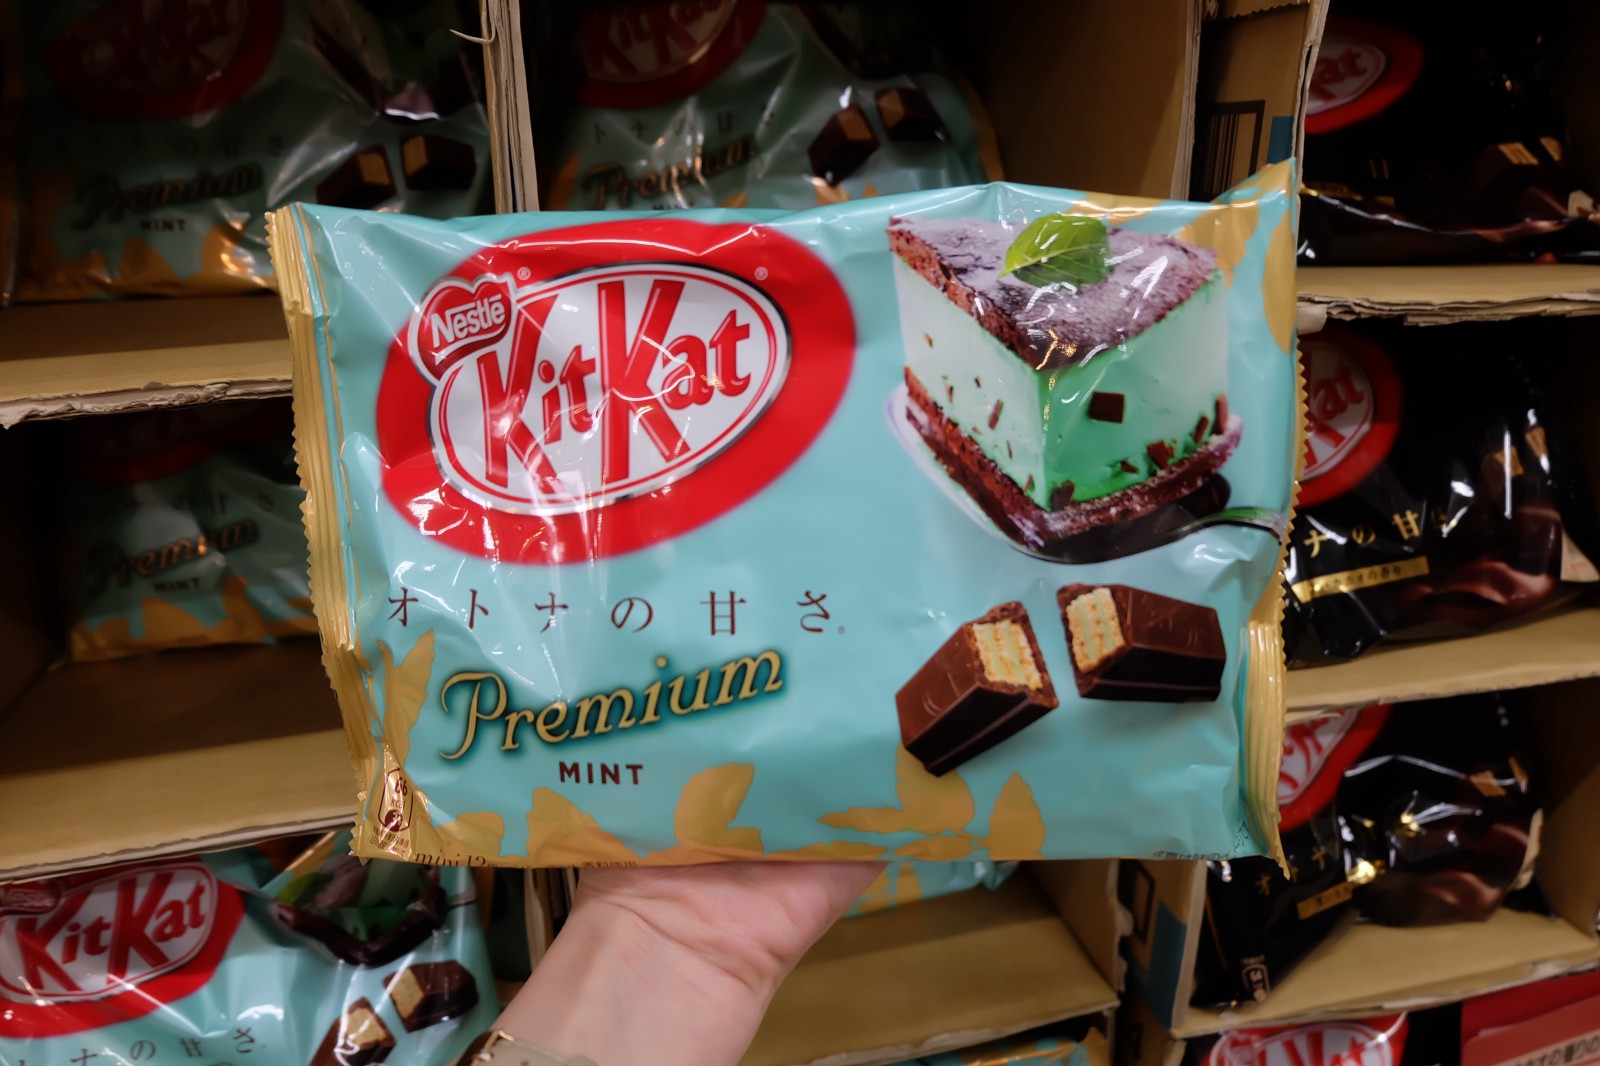 KitKat Premium Mint flavour